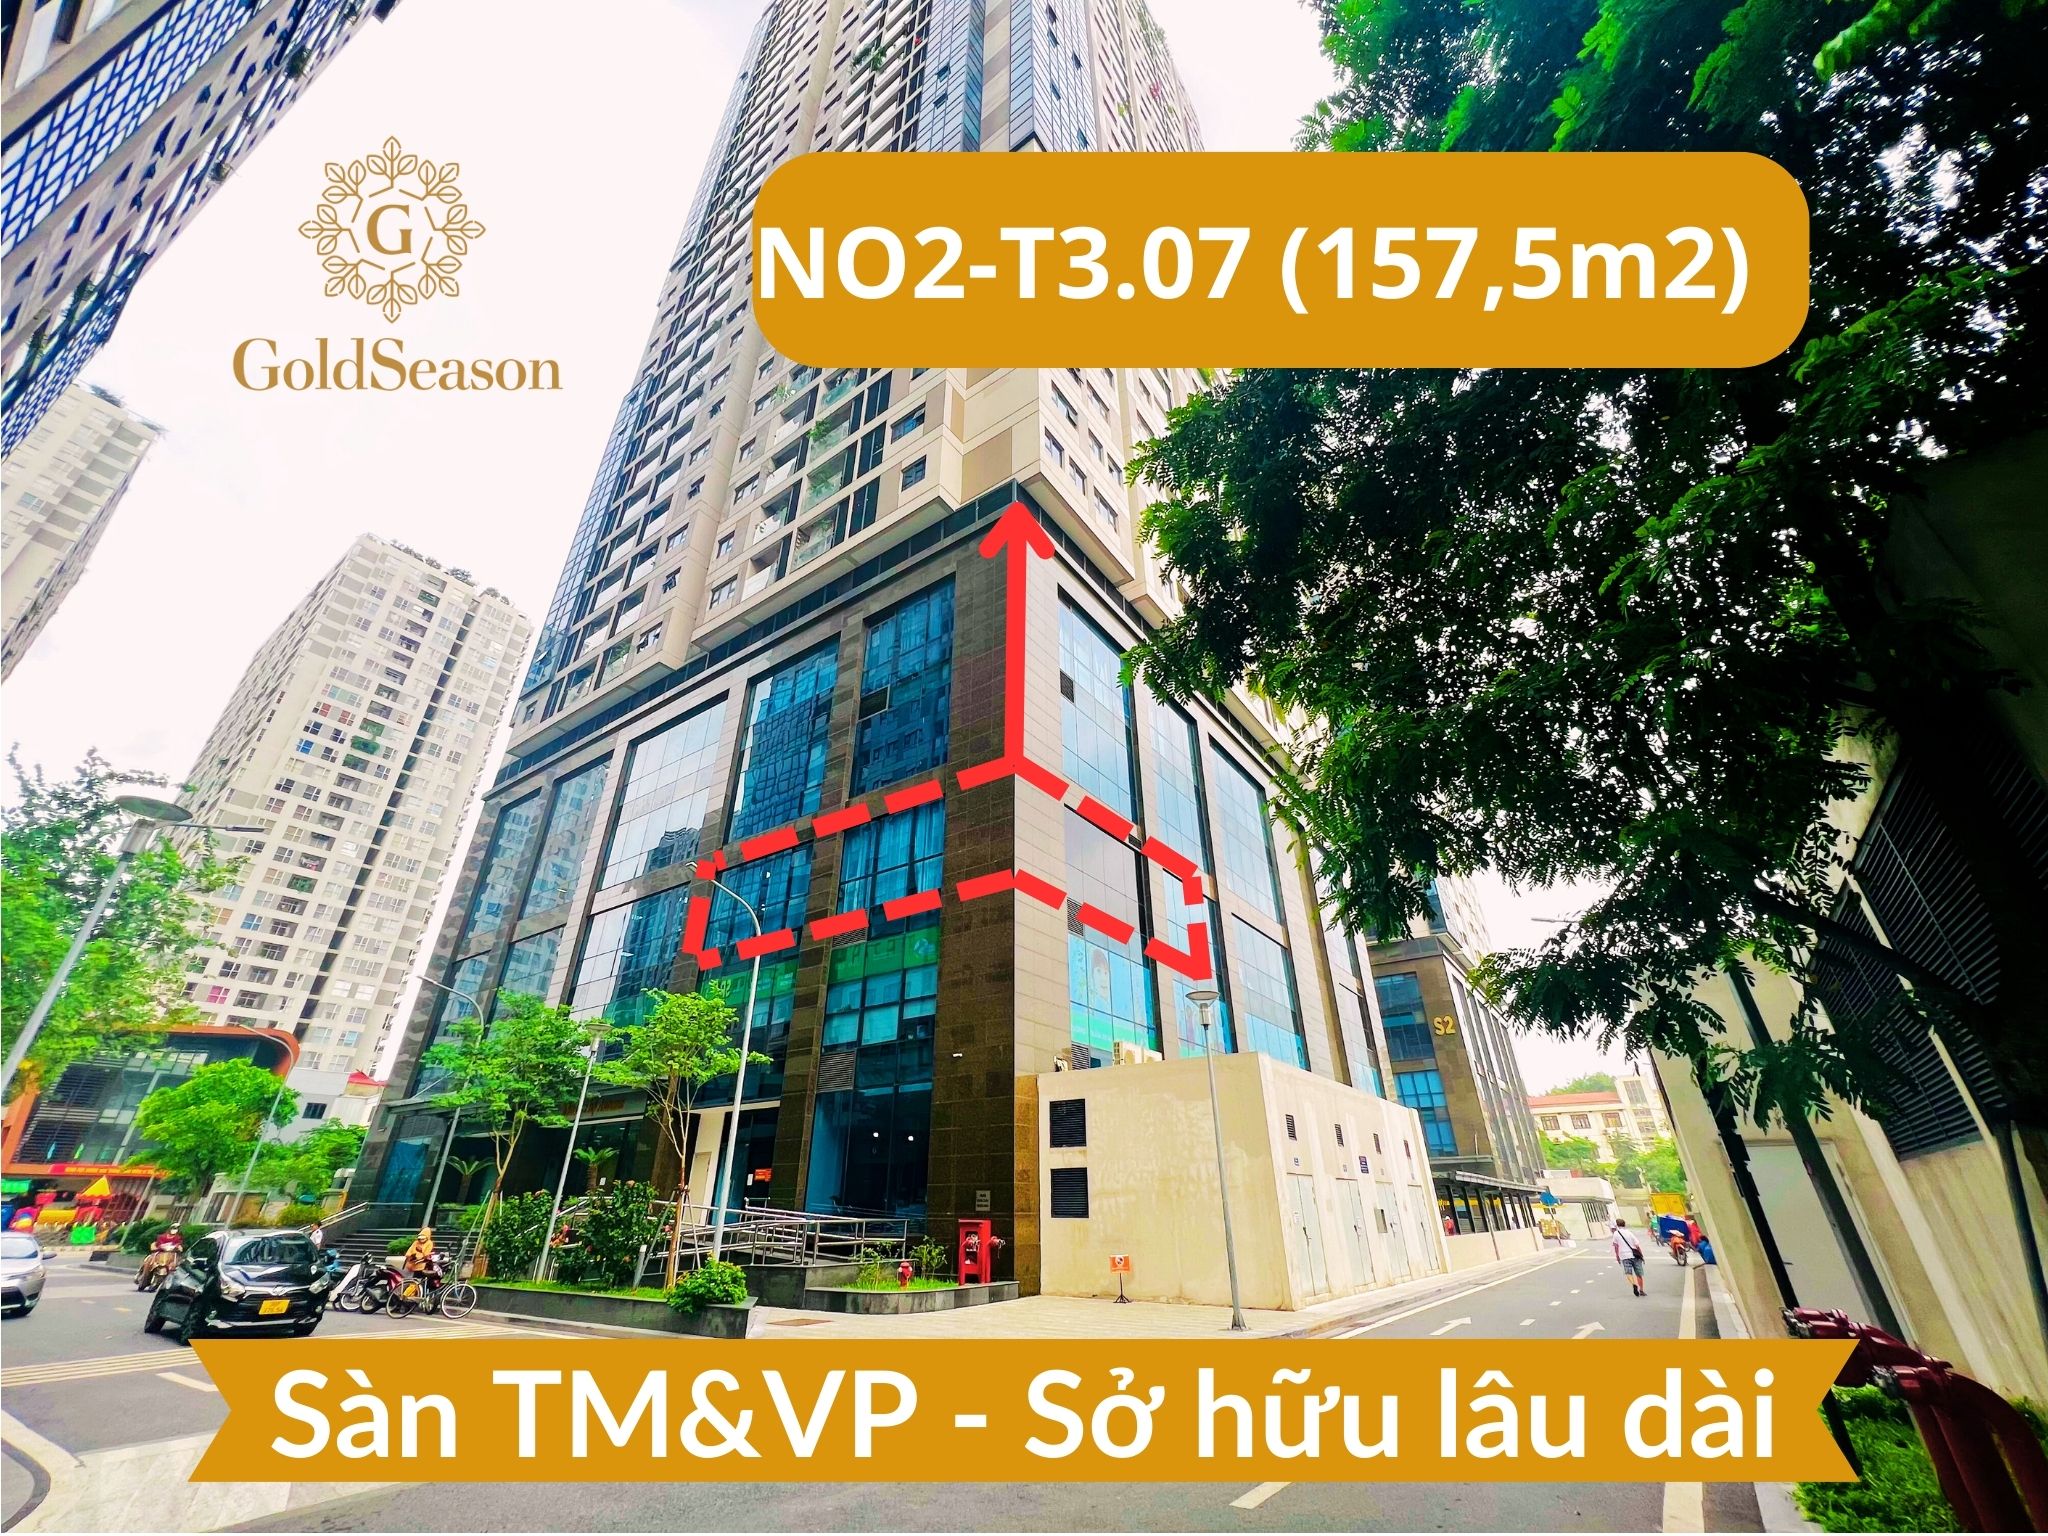 Chính chủ bán lô góc sàn văn phòng 157,5m2 - Sở hữu lâu dài đỉnh nhất quận Thanh Xuân tiền thuê 39,2tr/tháng